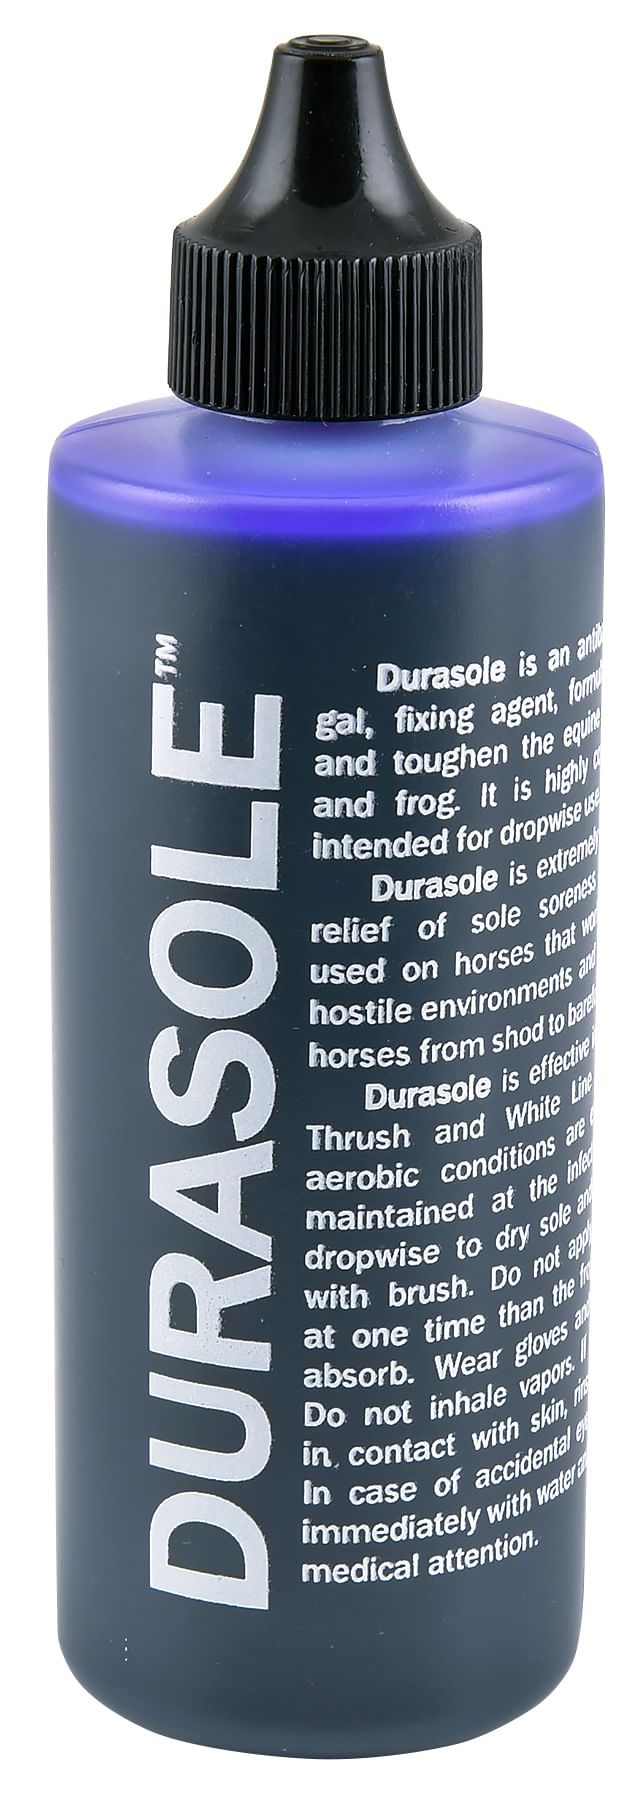 Durasole-Sole-Hardener-4-oz-bottle